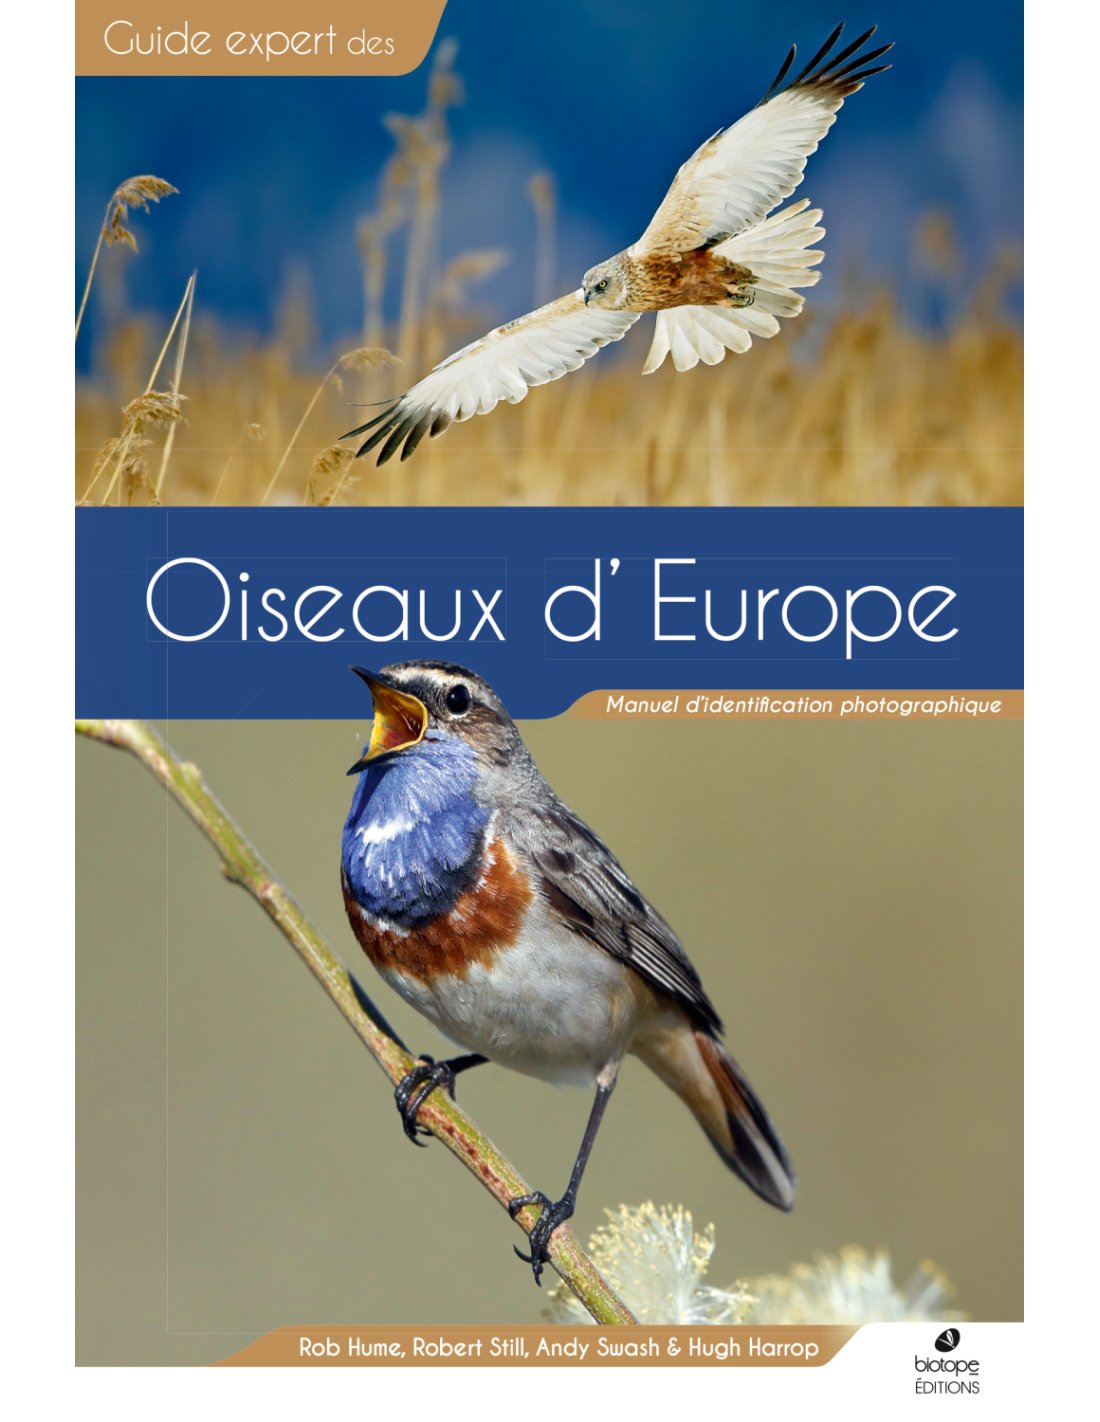 Oiseaux d'europe